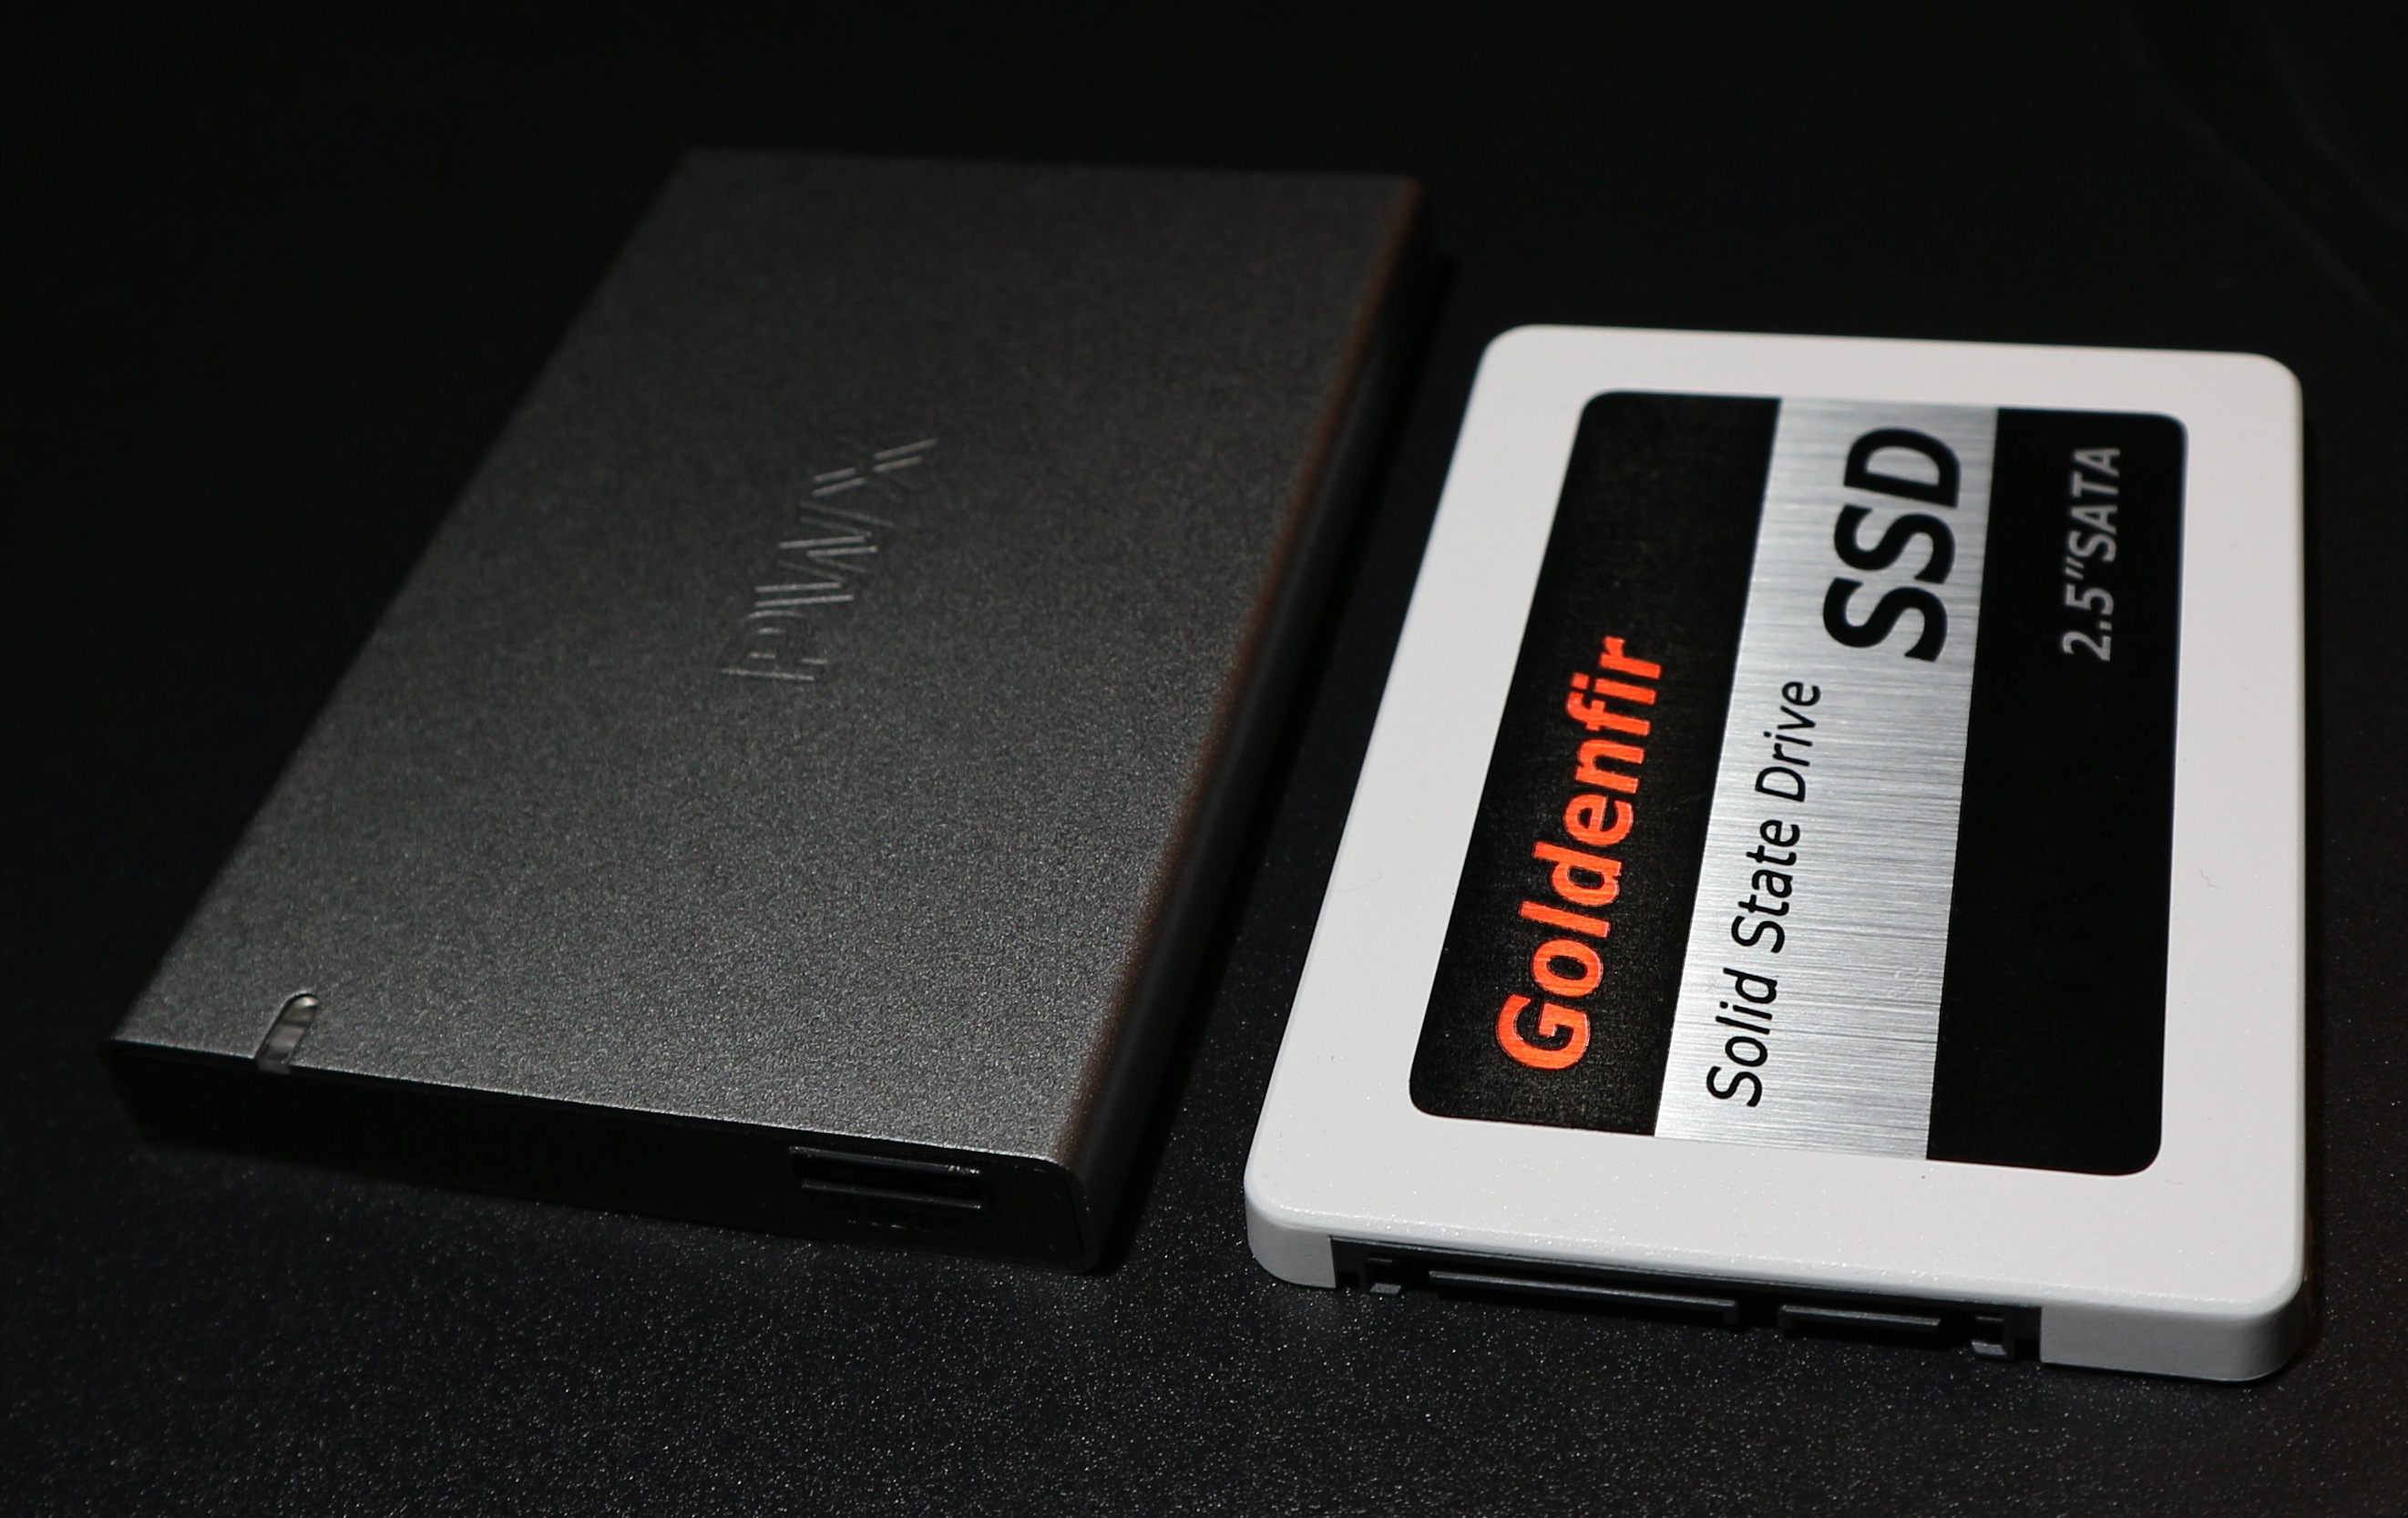 SSD SATA-III Festplatte (6GB pro Sekunde) mit 256GB - Kassa, PC und Laptop beschleunigen